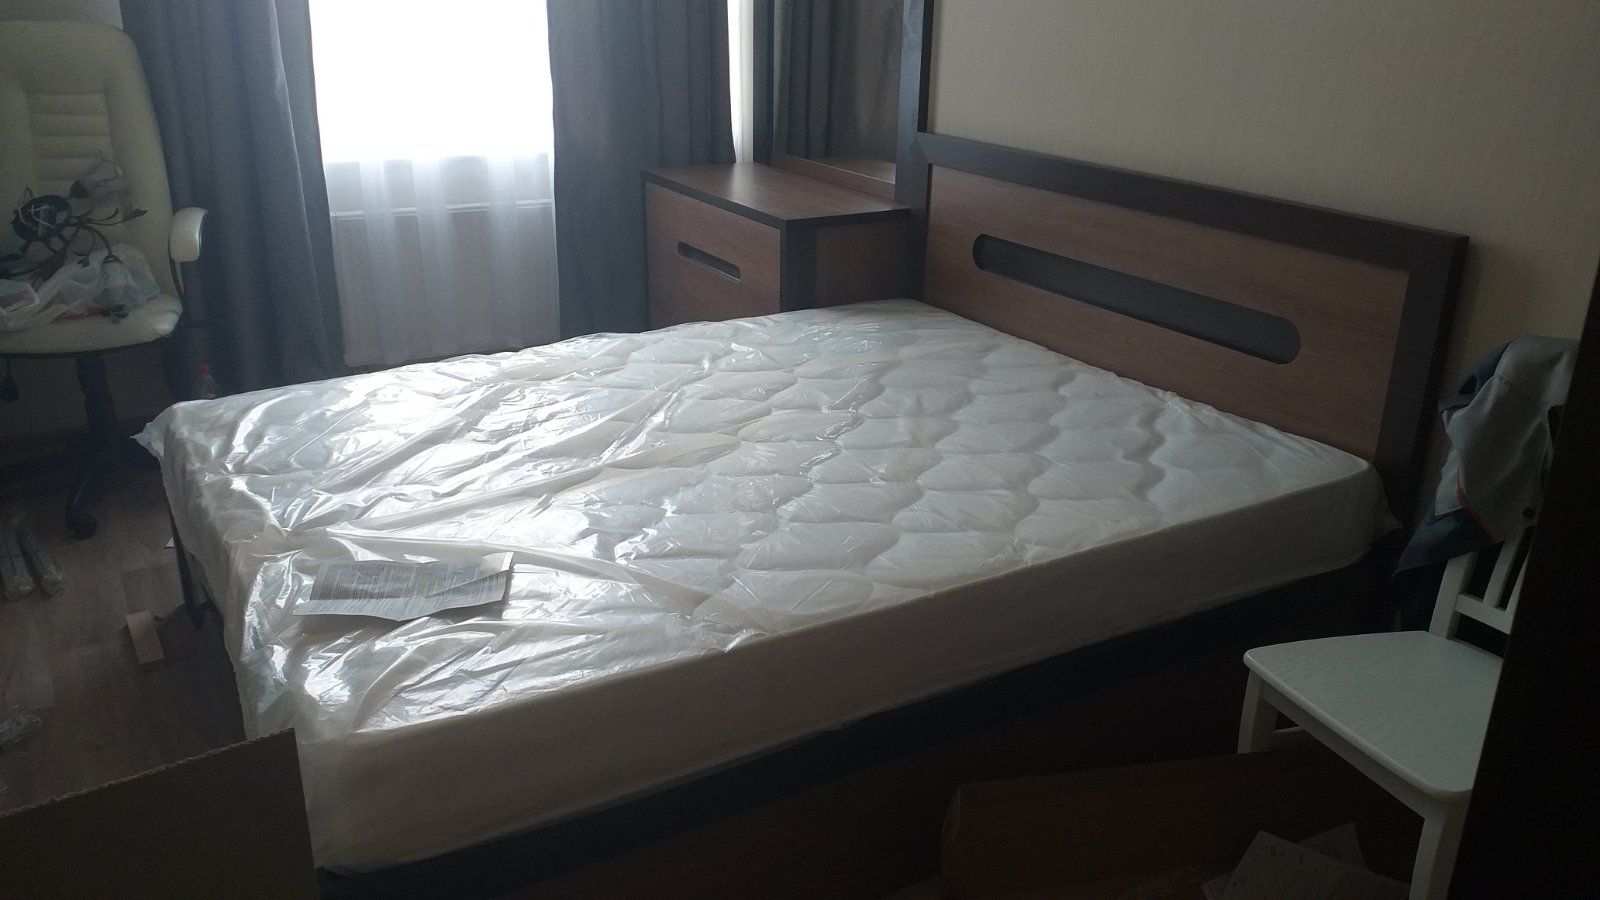 Двуспальная кровать "Альба" 140 х 190 с подъемным механизмом цвет бодега